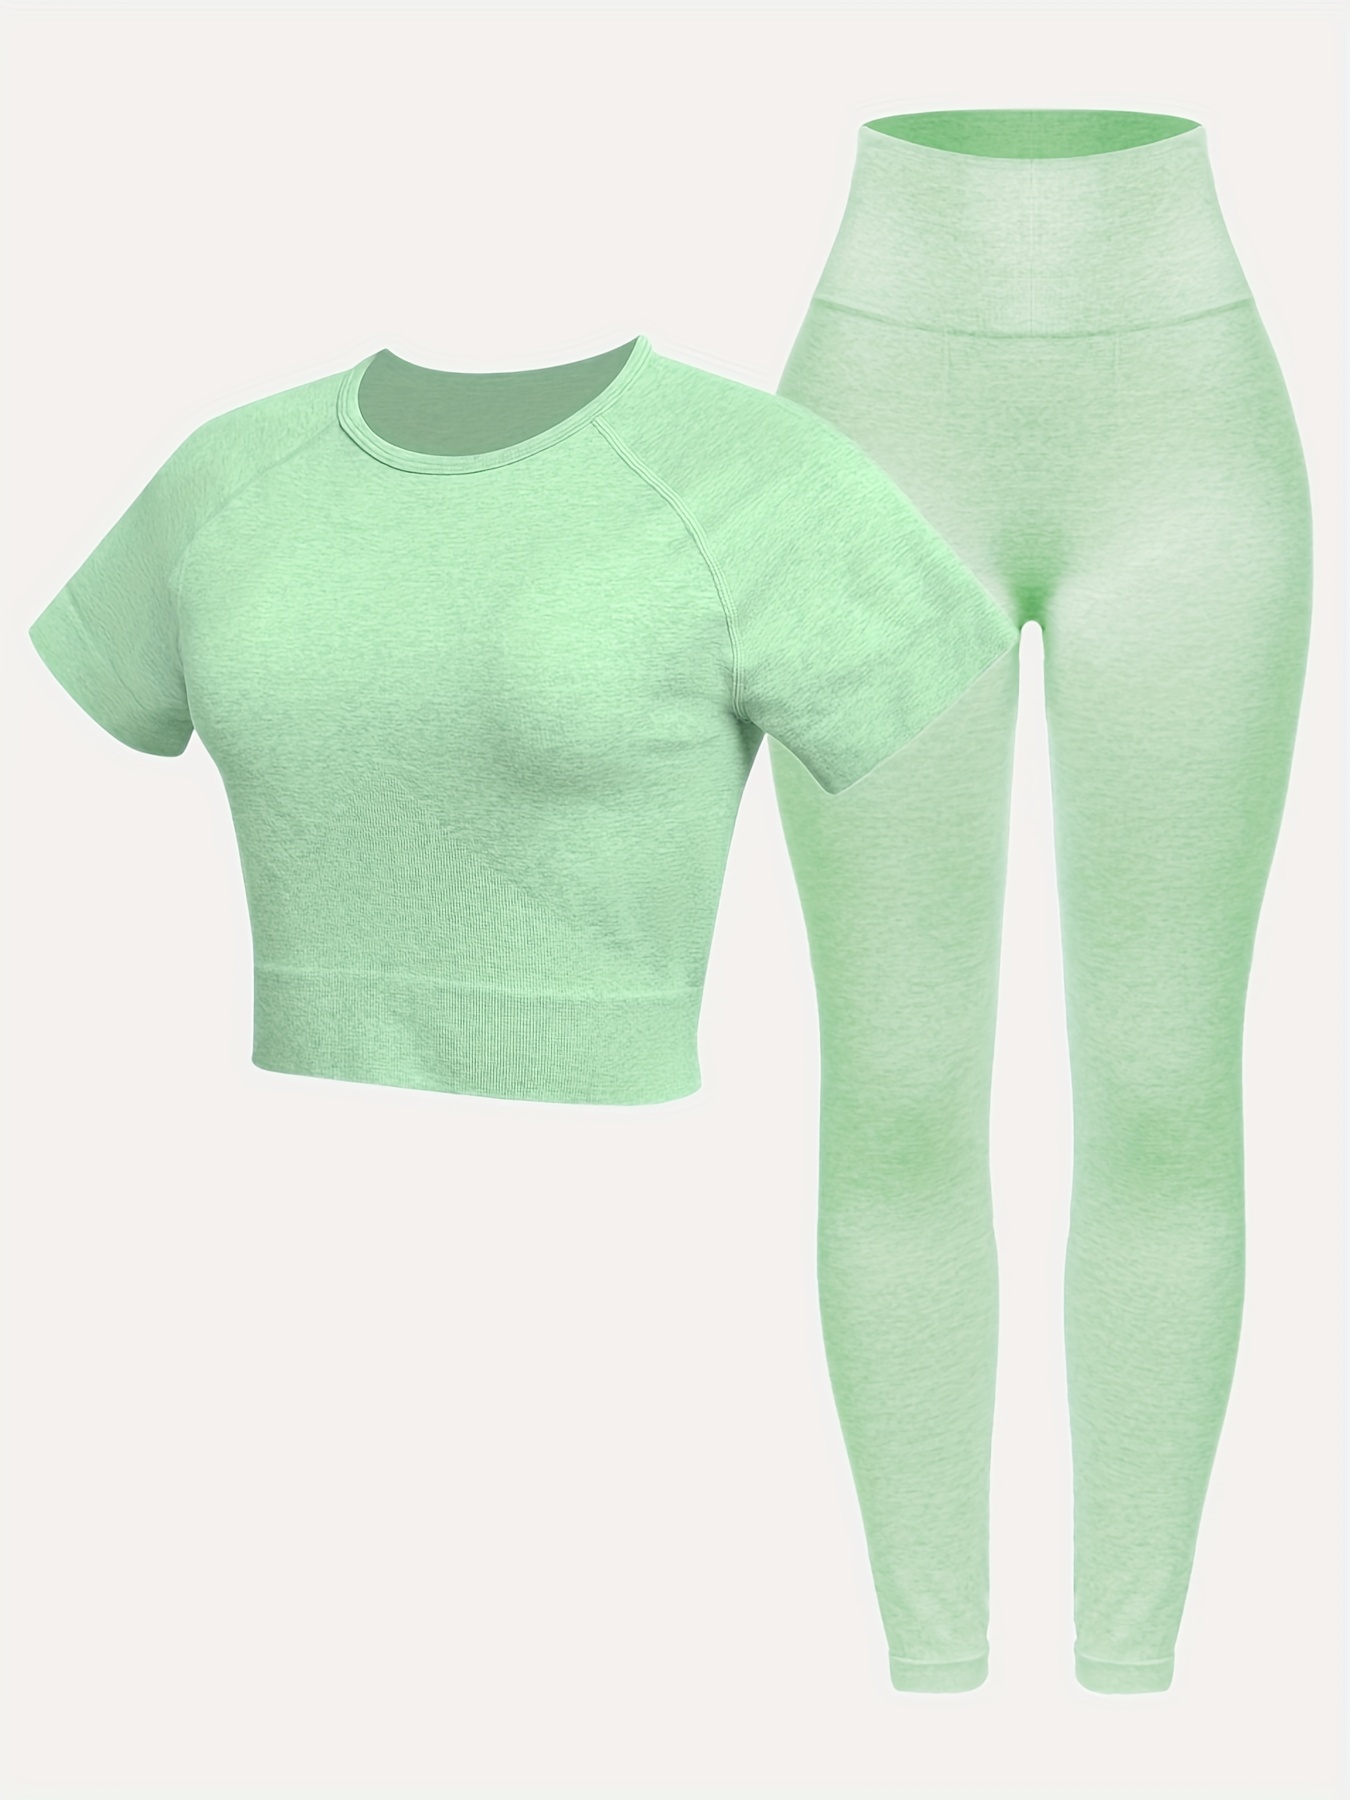 Marika Activewear Top-Light Green  Active wear tops, Active wear